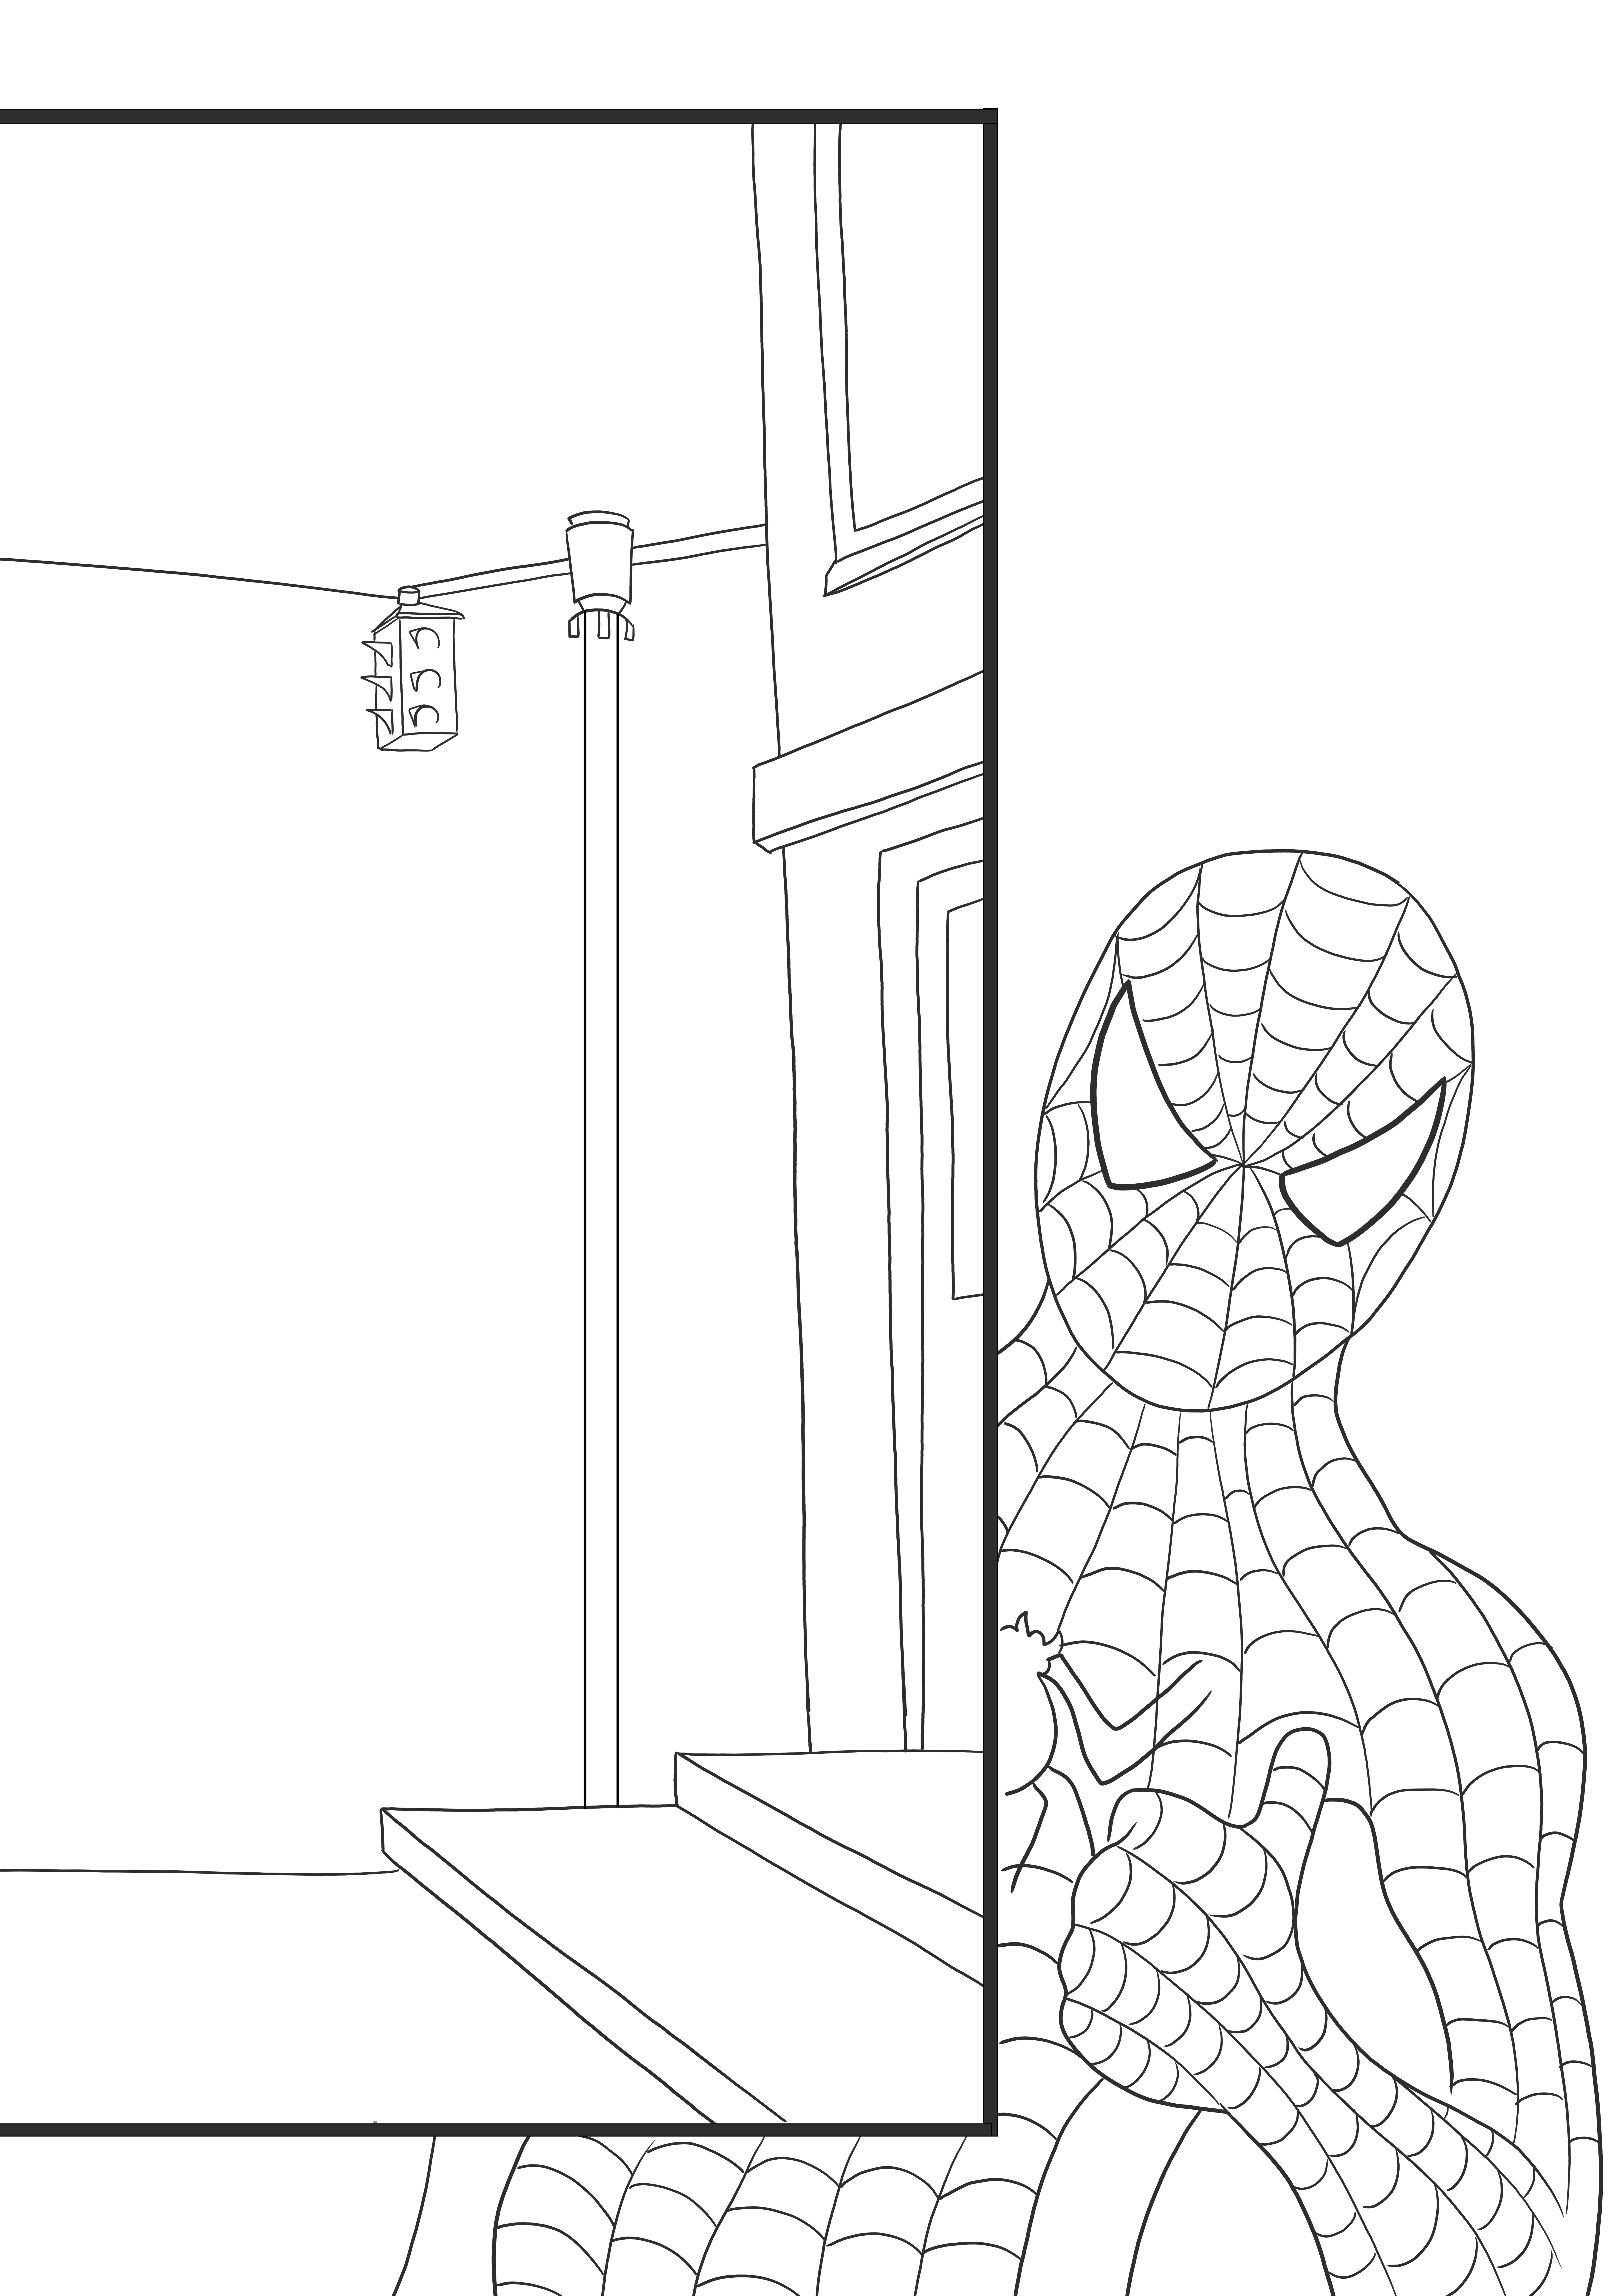 Spiderman spioniert ein fensterloses Mal- und Druckbild aus